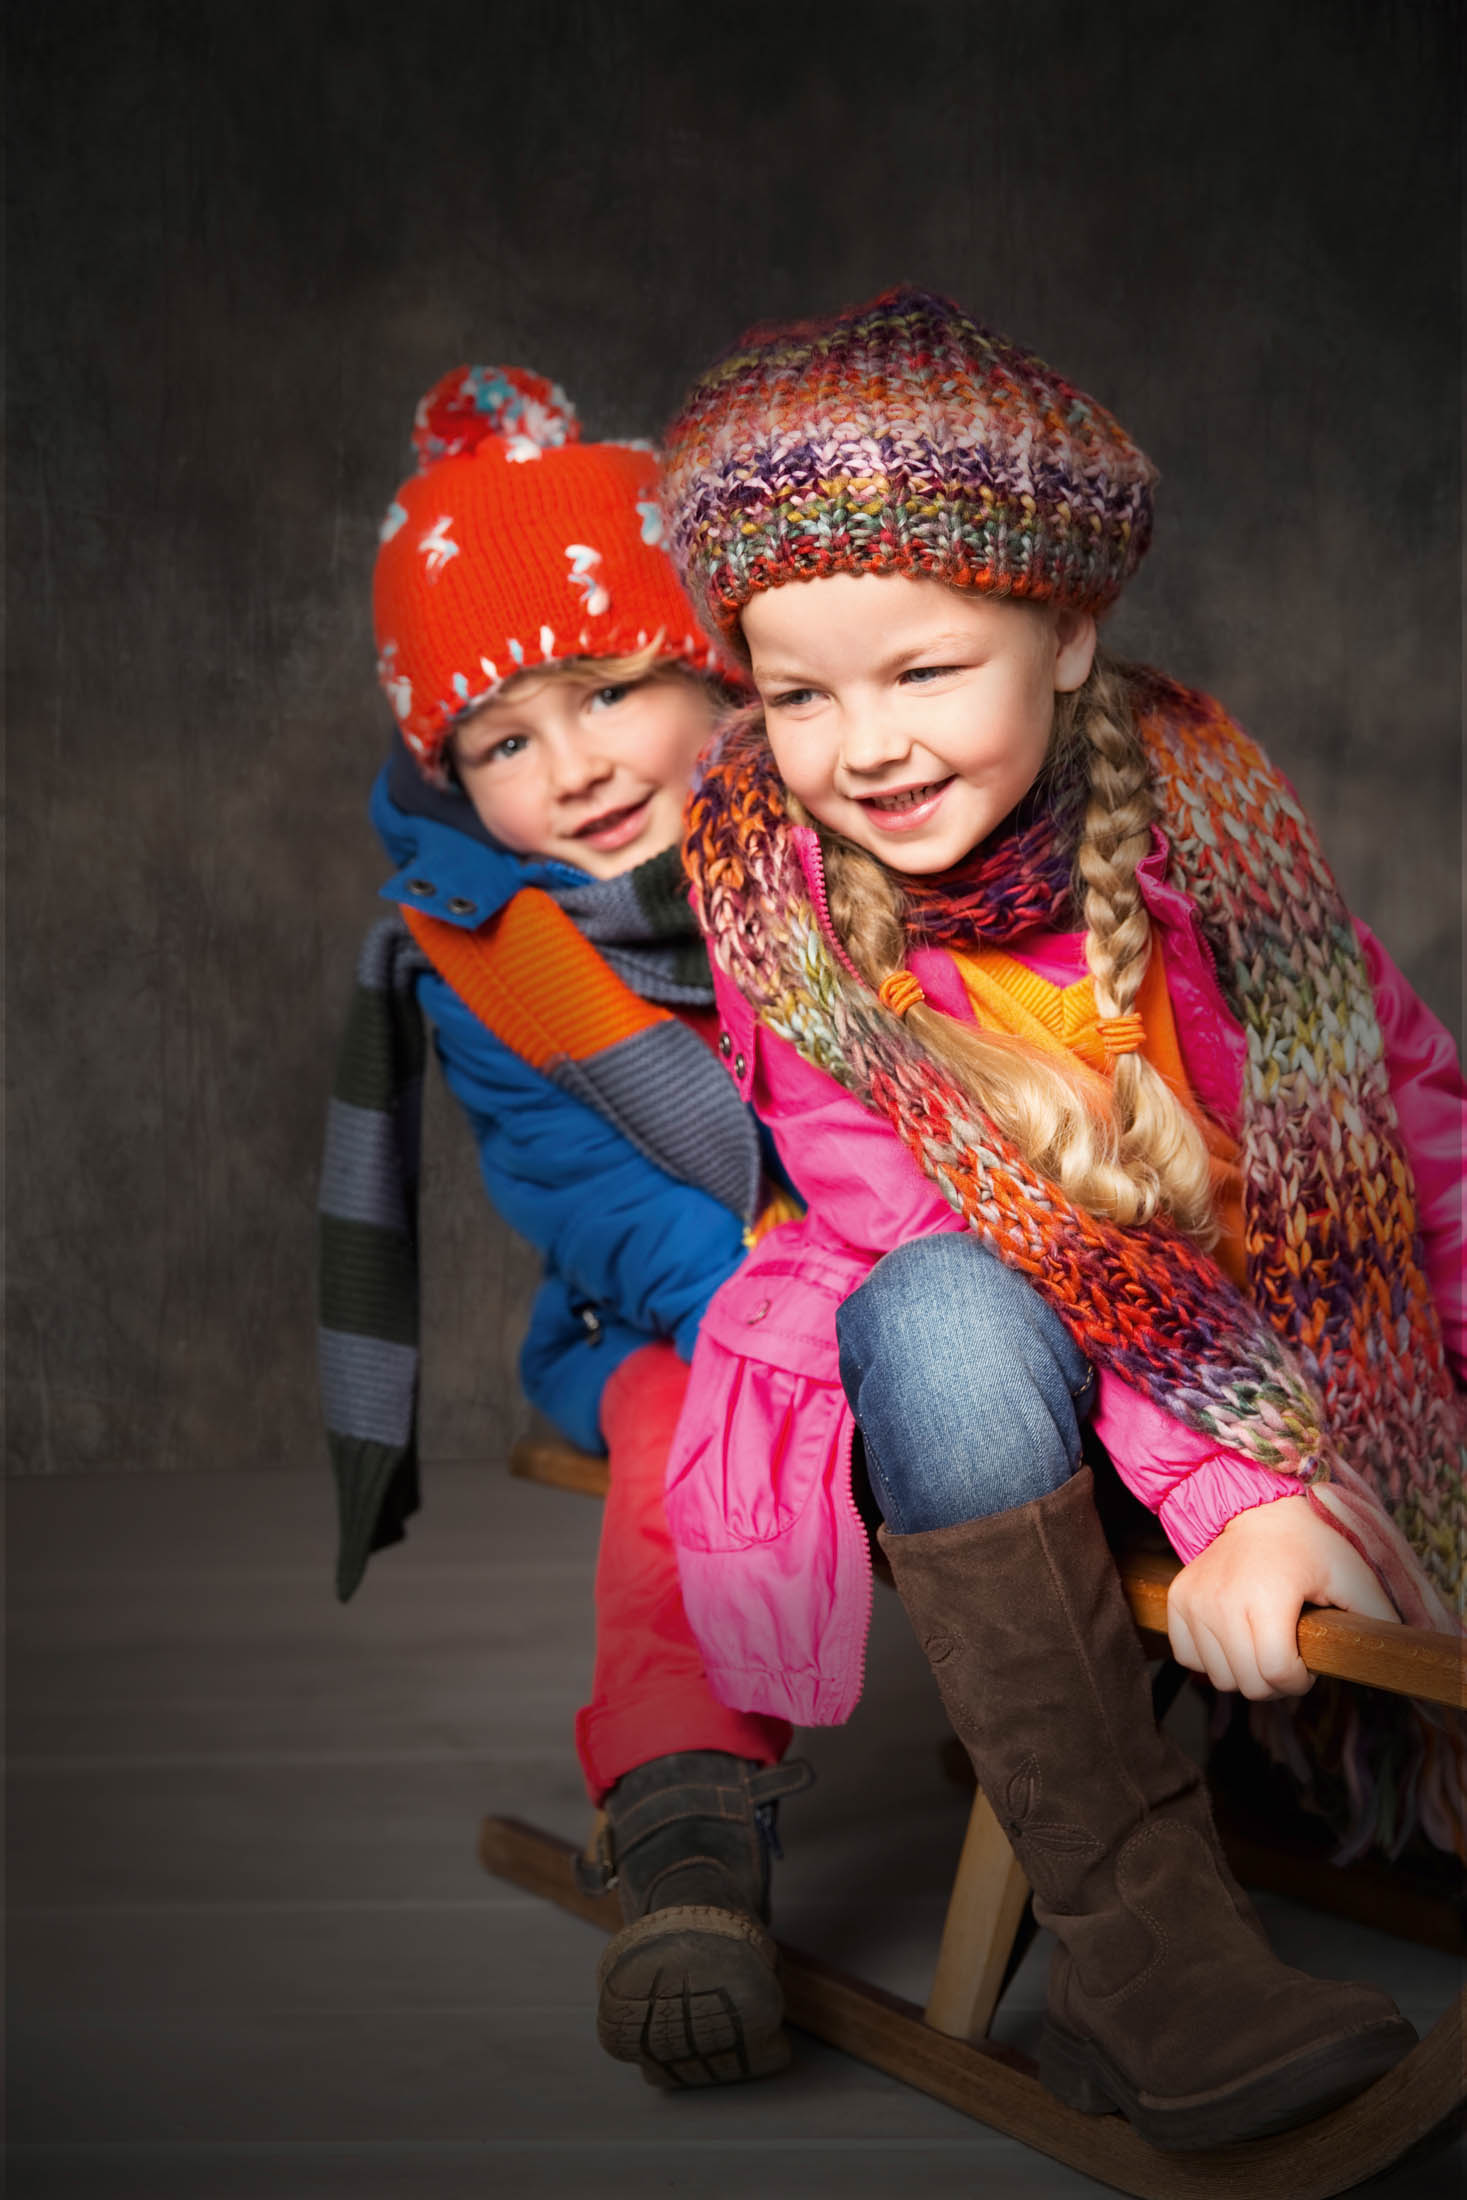 Zwei Kinder in Winterkleidung, darunter bunte Mützen und Schals, sitzen lächelnd zusammen auf einem Holzschlitten vor einem grauen Hintergrund. © Fotografie Tomas Rodriguez